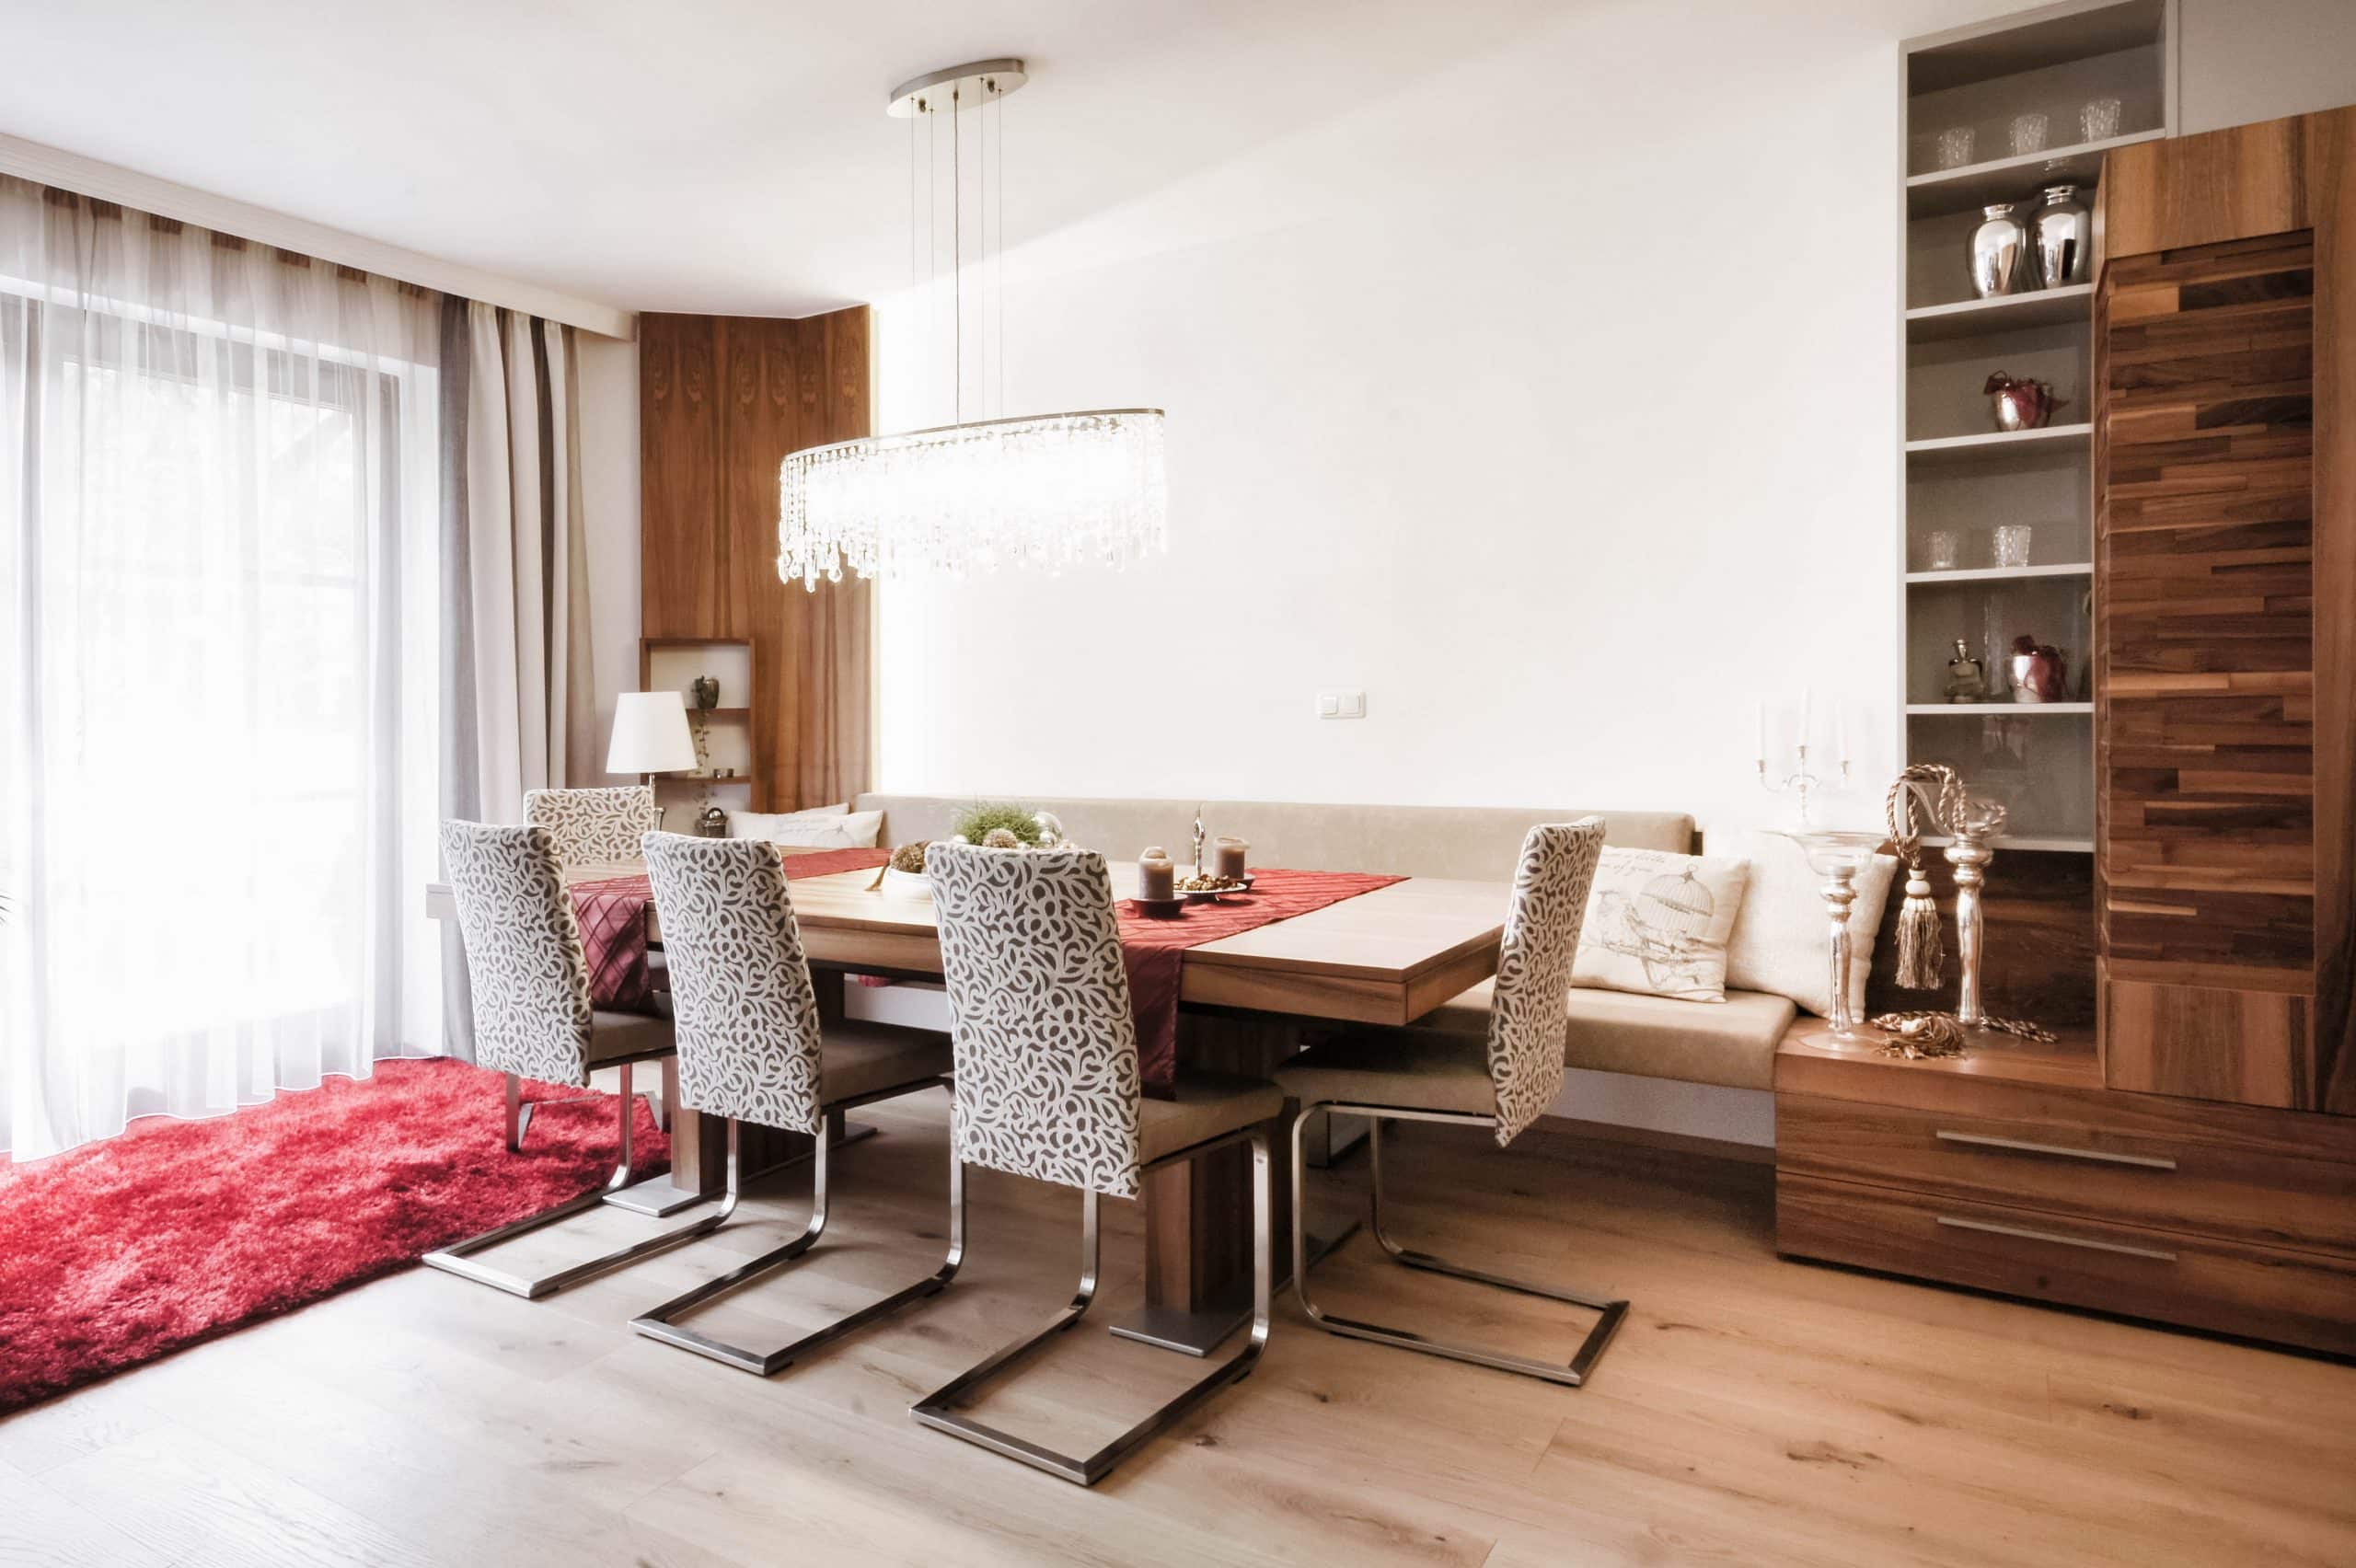 Offenes Wohn-/Esszimmer mit ausziehbarem Holztisch, Schwingsesseln und einer Bank mit hellem Bezug, konzipiert, gefertigt und eingebaut von der Tischlerei Böhm Möbel.